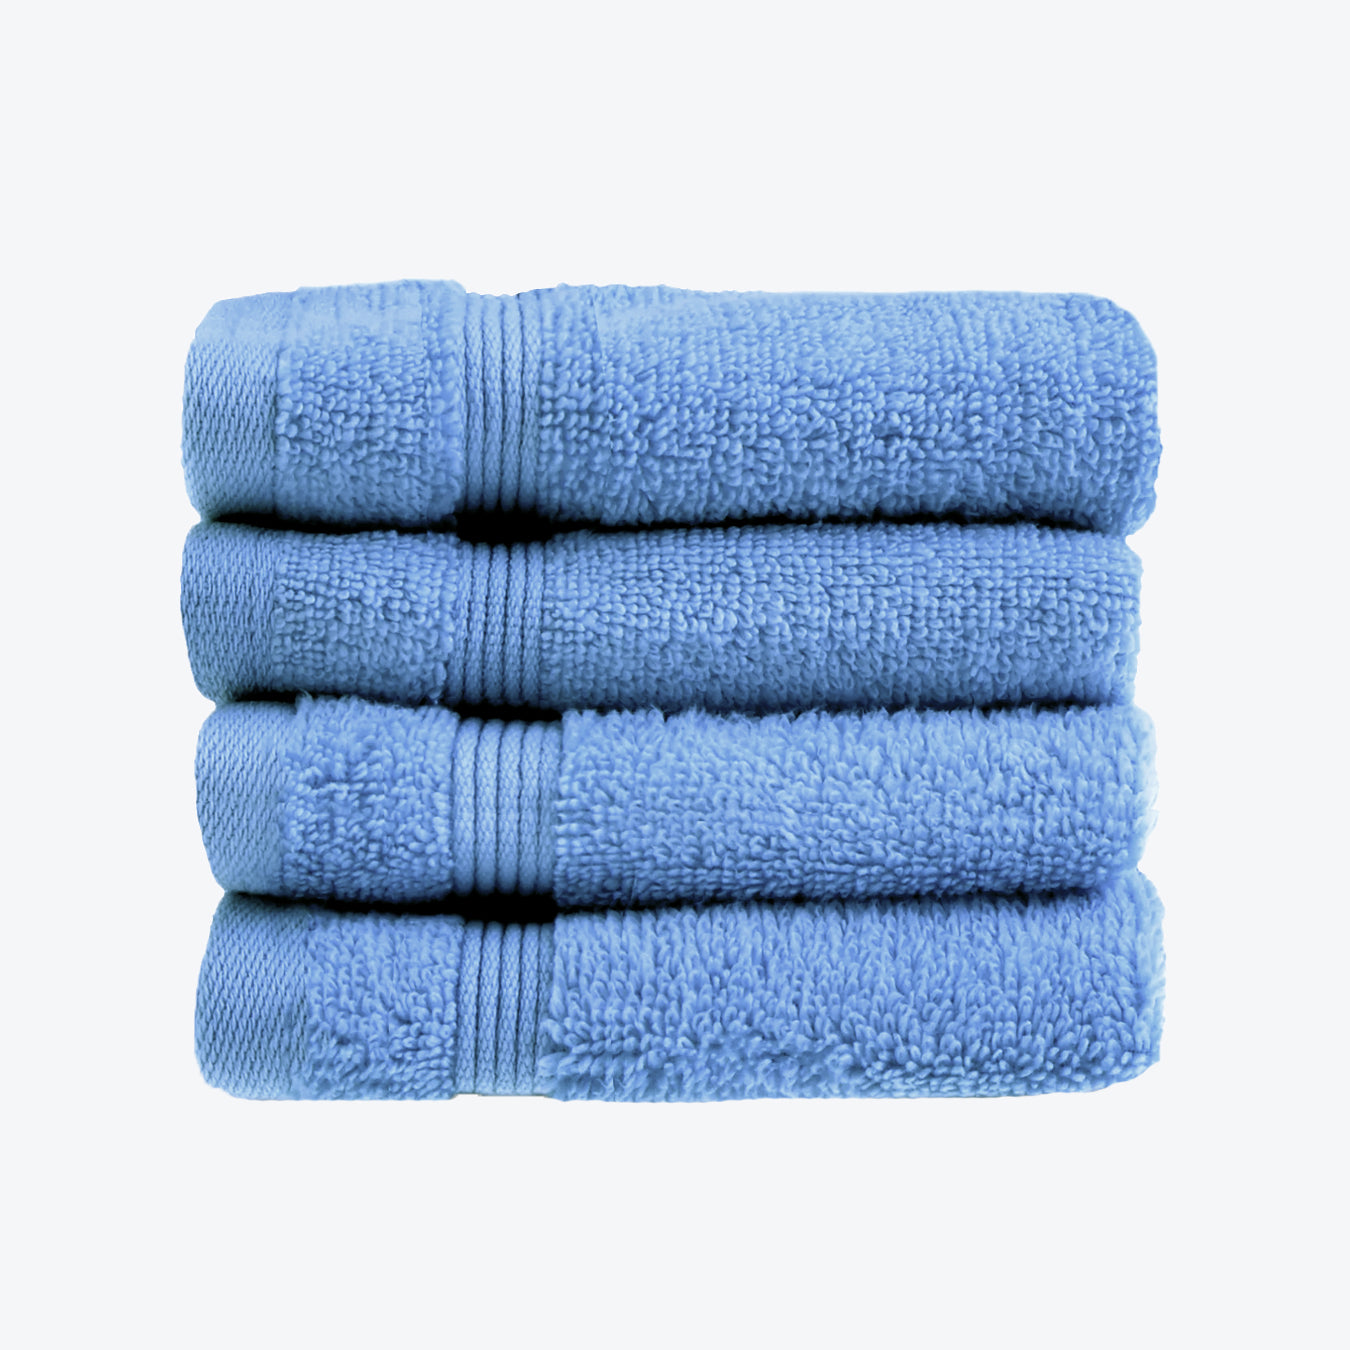 Cornish Blue Egyptian Towels 4pk Face Cloths Set- Premium Zero Twist Cotton Flannels